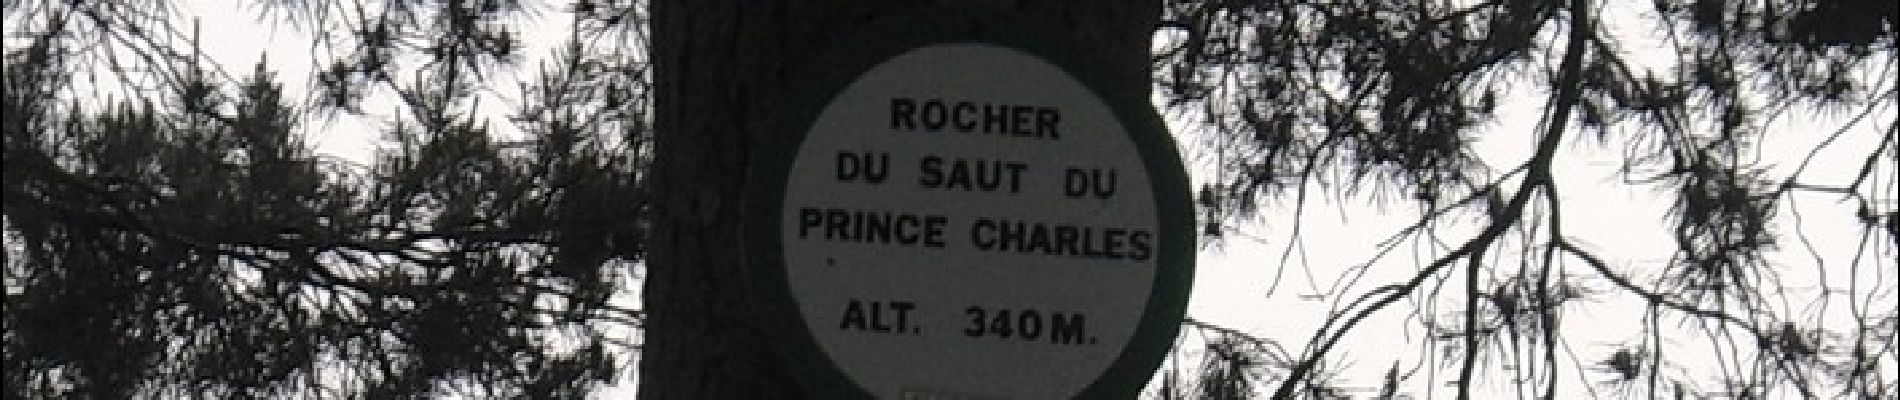 Tocht Stappen Saverne - Circulaire du Saut du Prince Charles - Photo